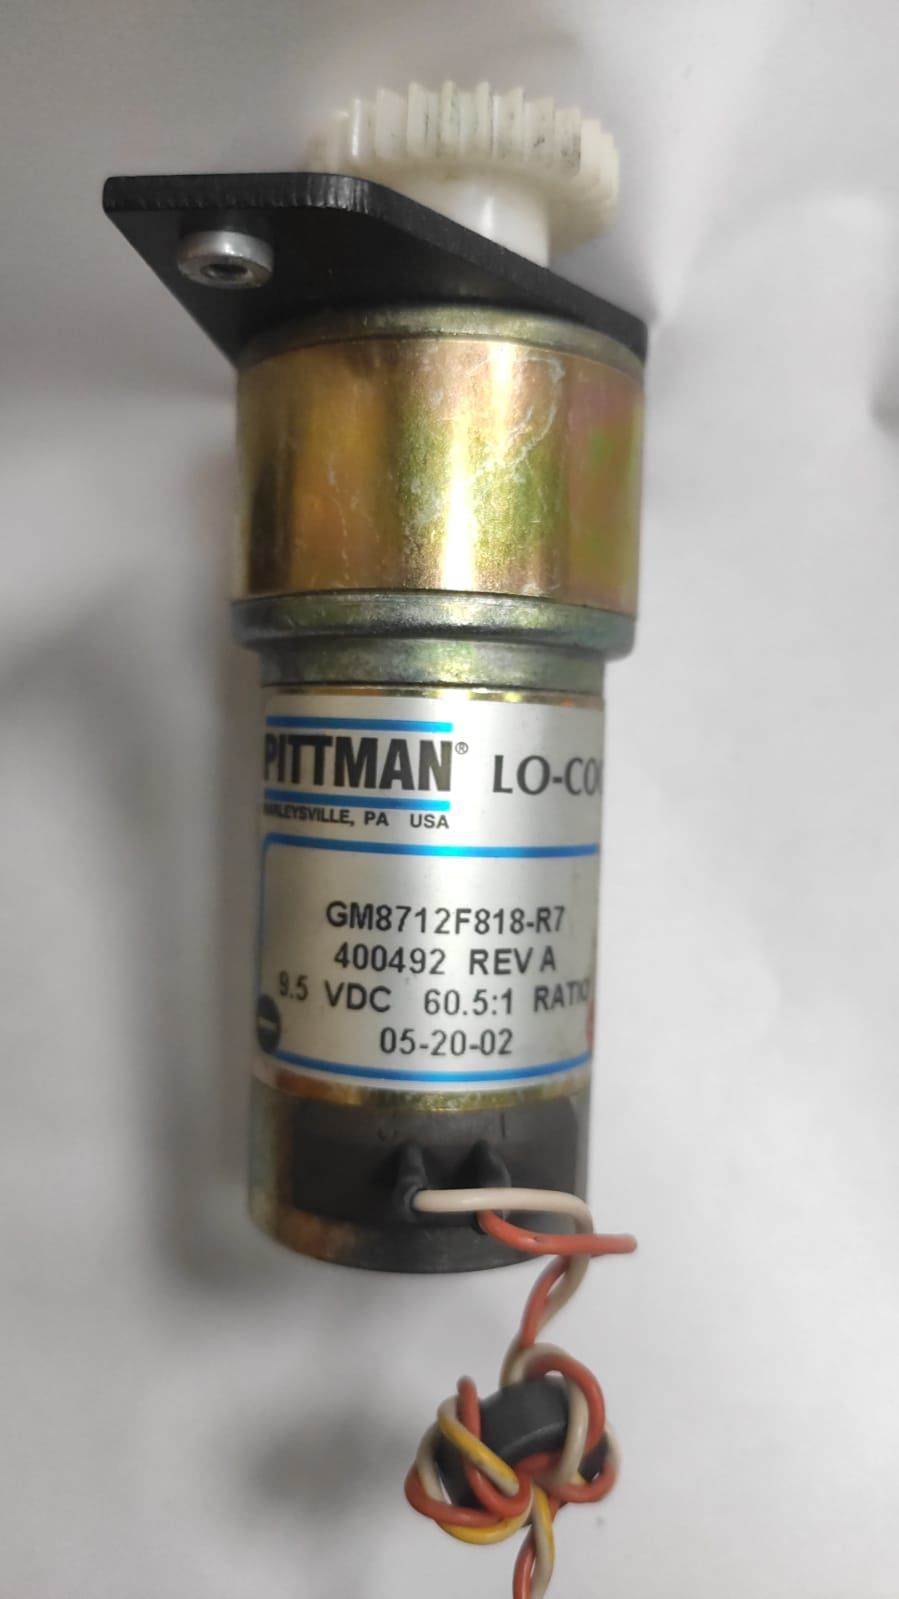 PITTMAN GM8712F818-R7 GEAR MOTOR, 9,5 VDC, 60.5:1 RATIO